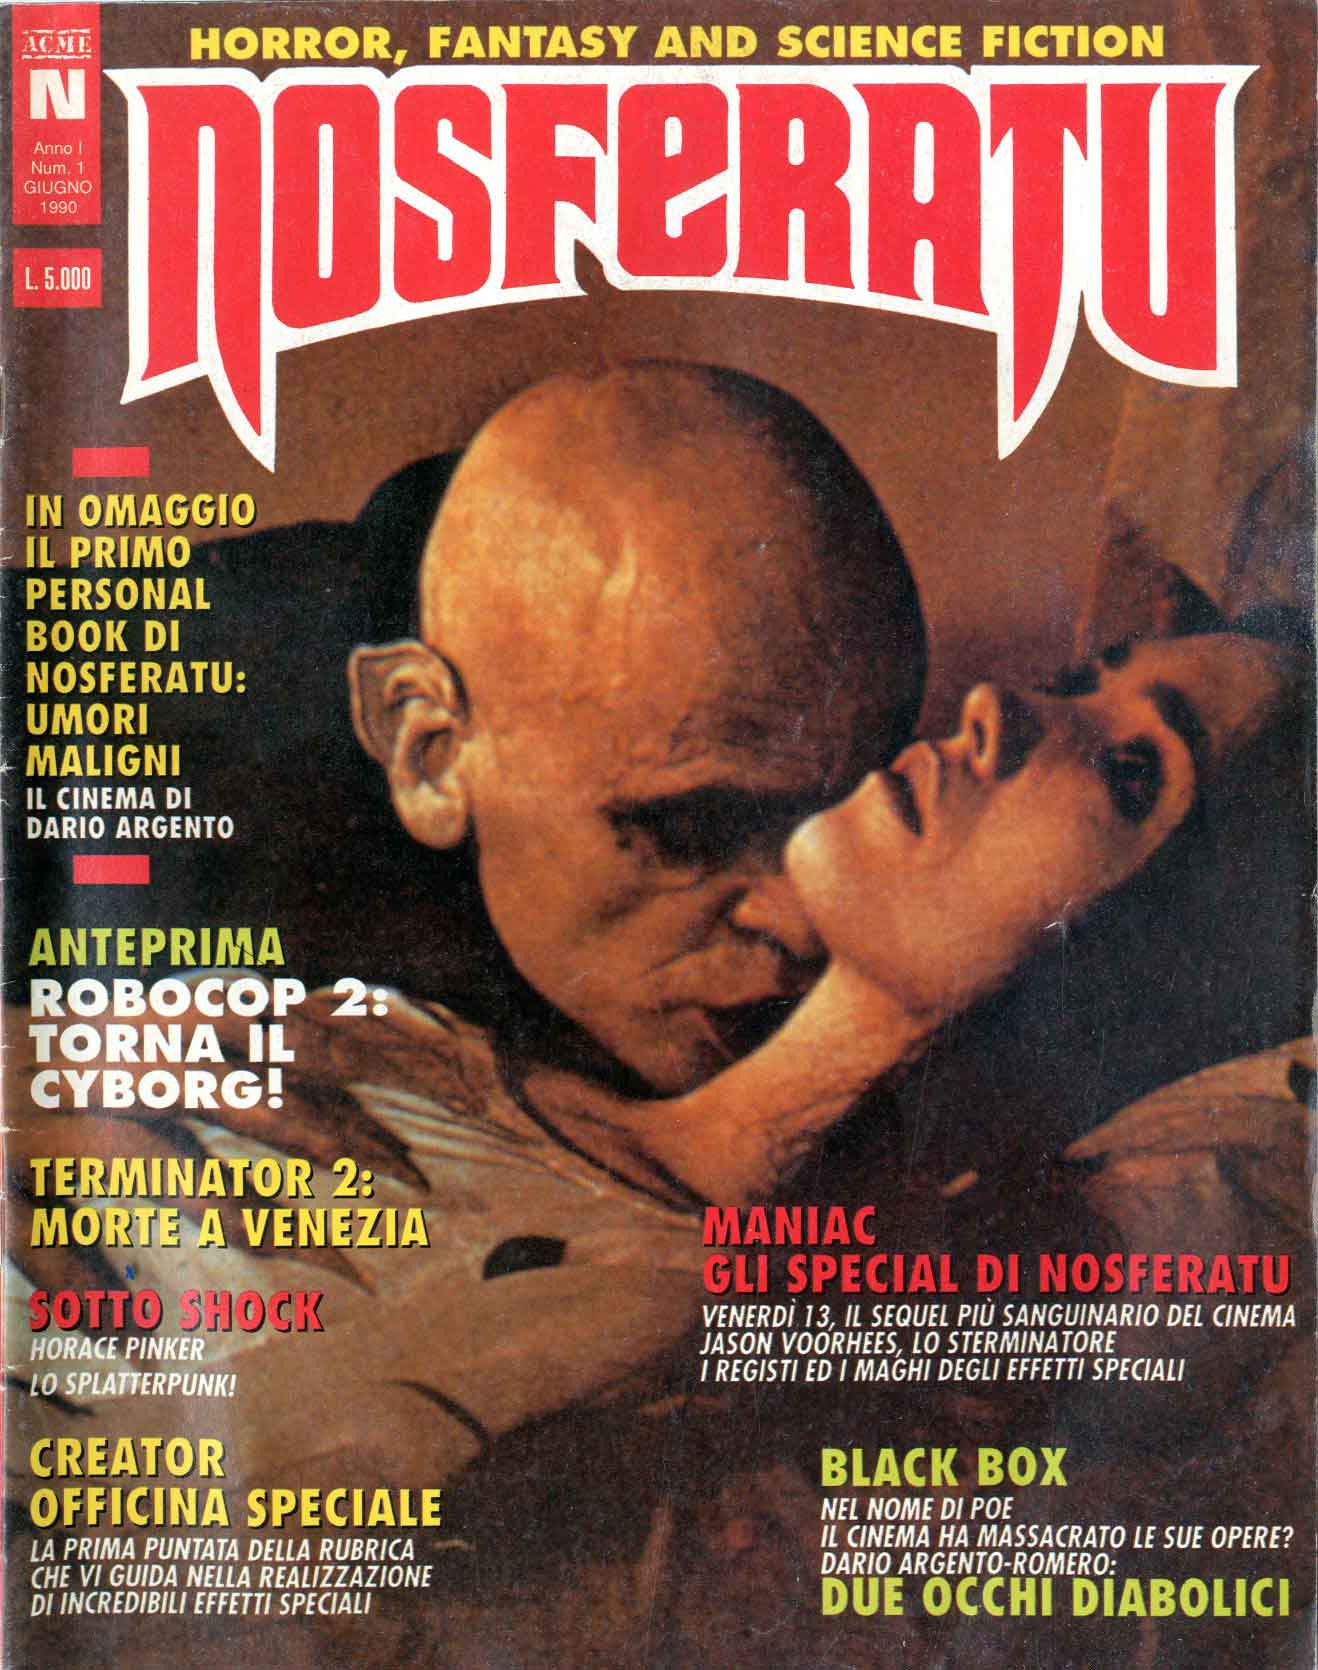 il primo numero della rivista Nosferatu della Acme